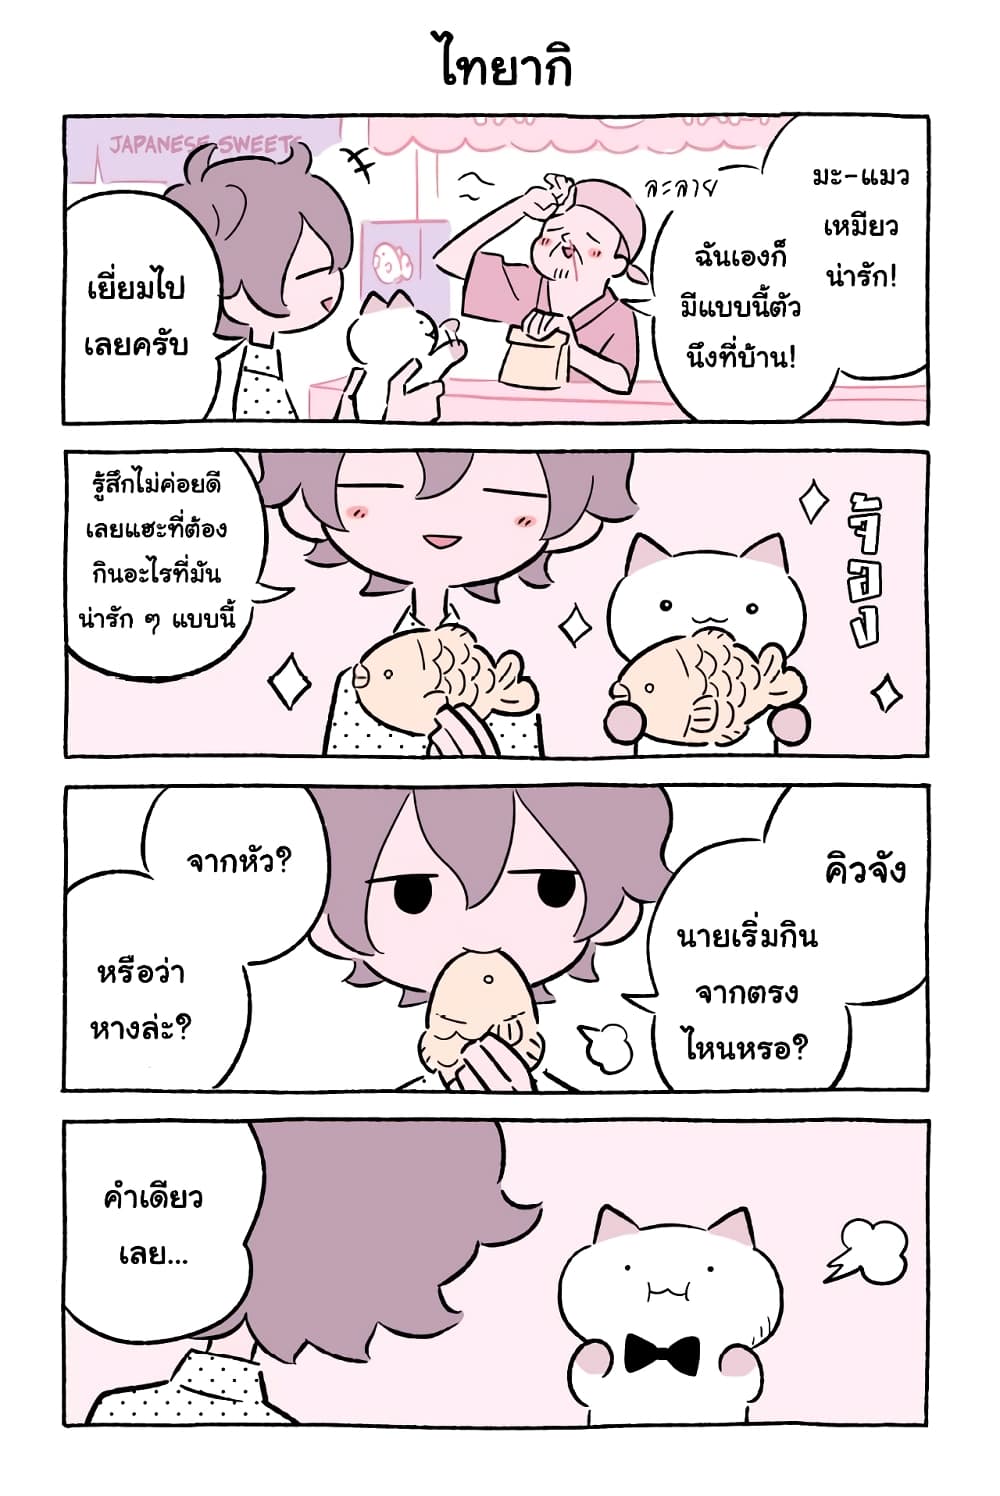 Wonder Cat Kyuu chan คิวจัง แมวมหัศจรรย์ ตอนที่ 47 (8)